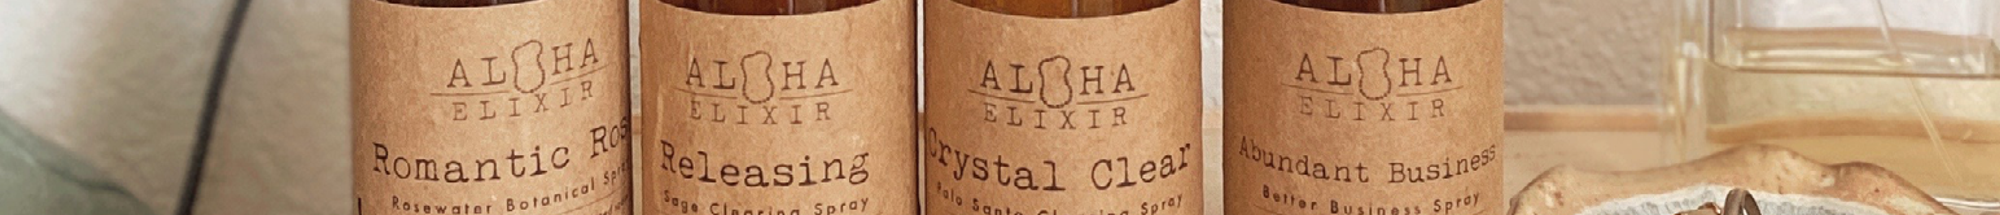 Aloha Elixir